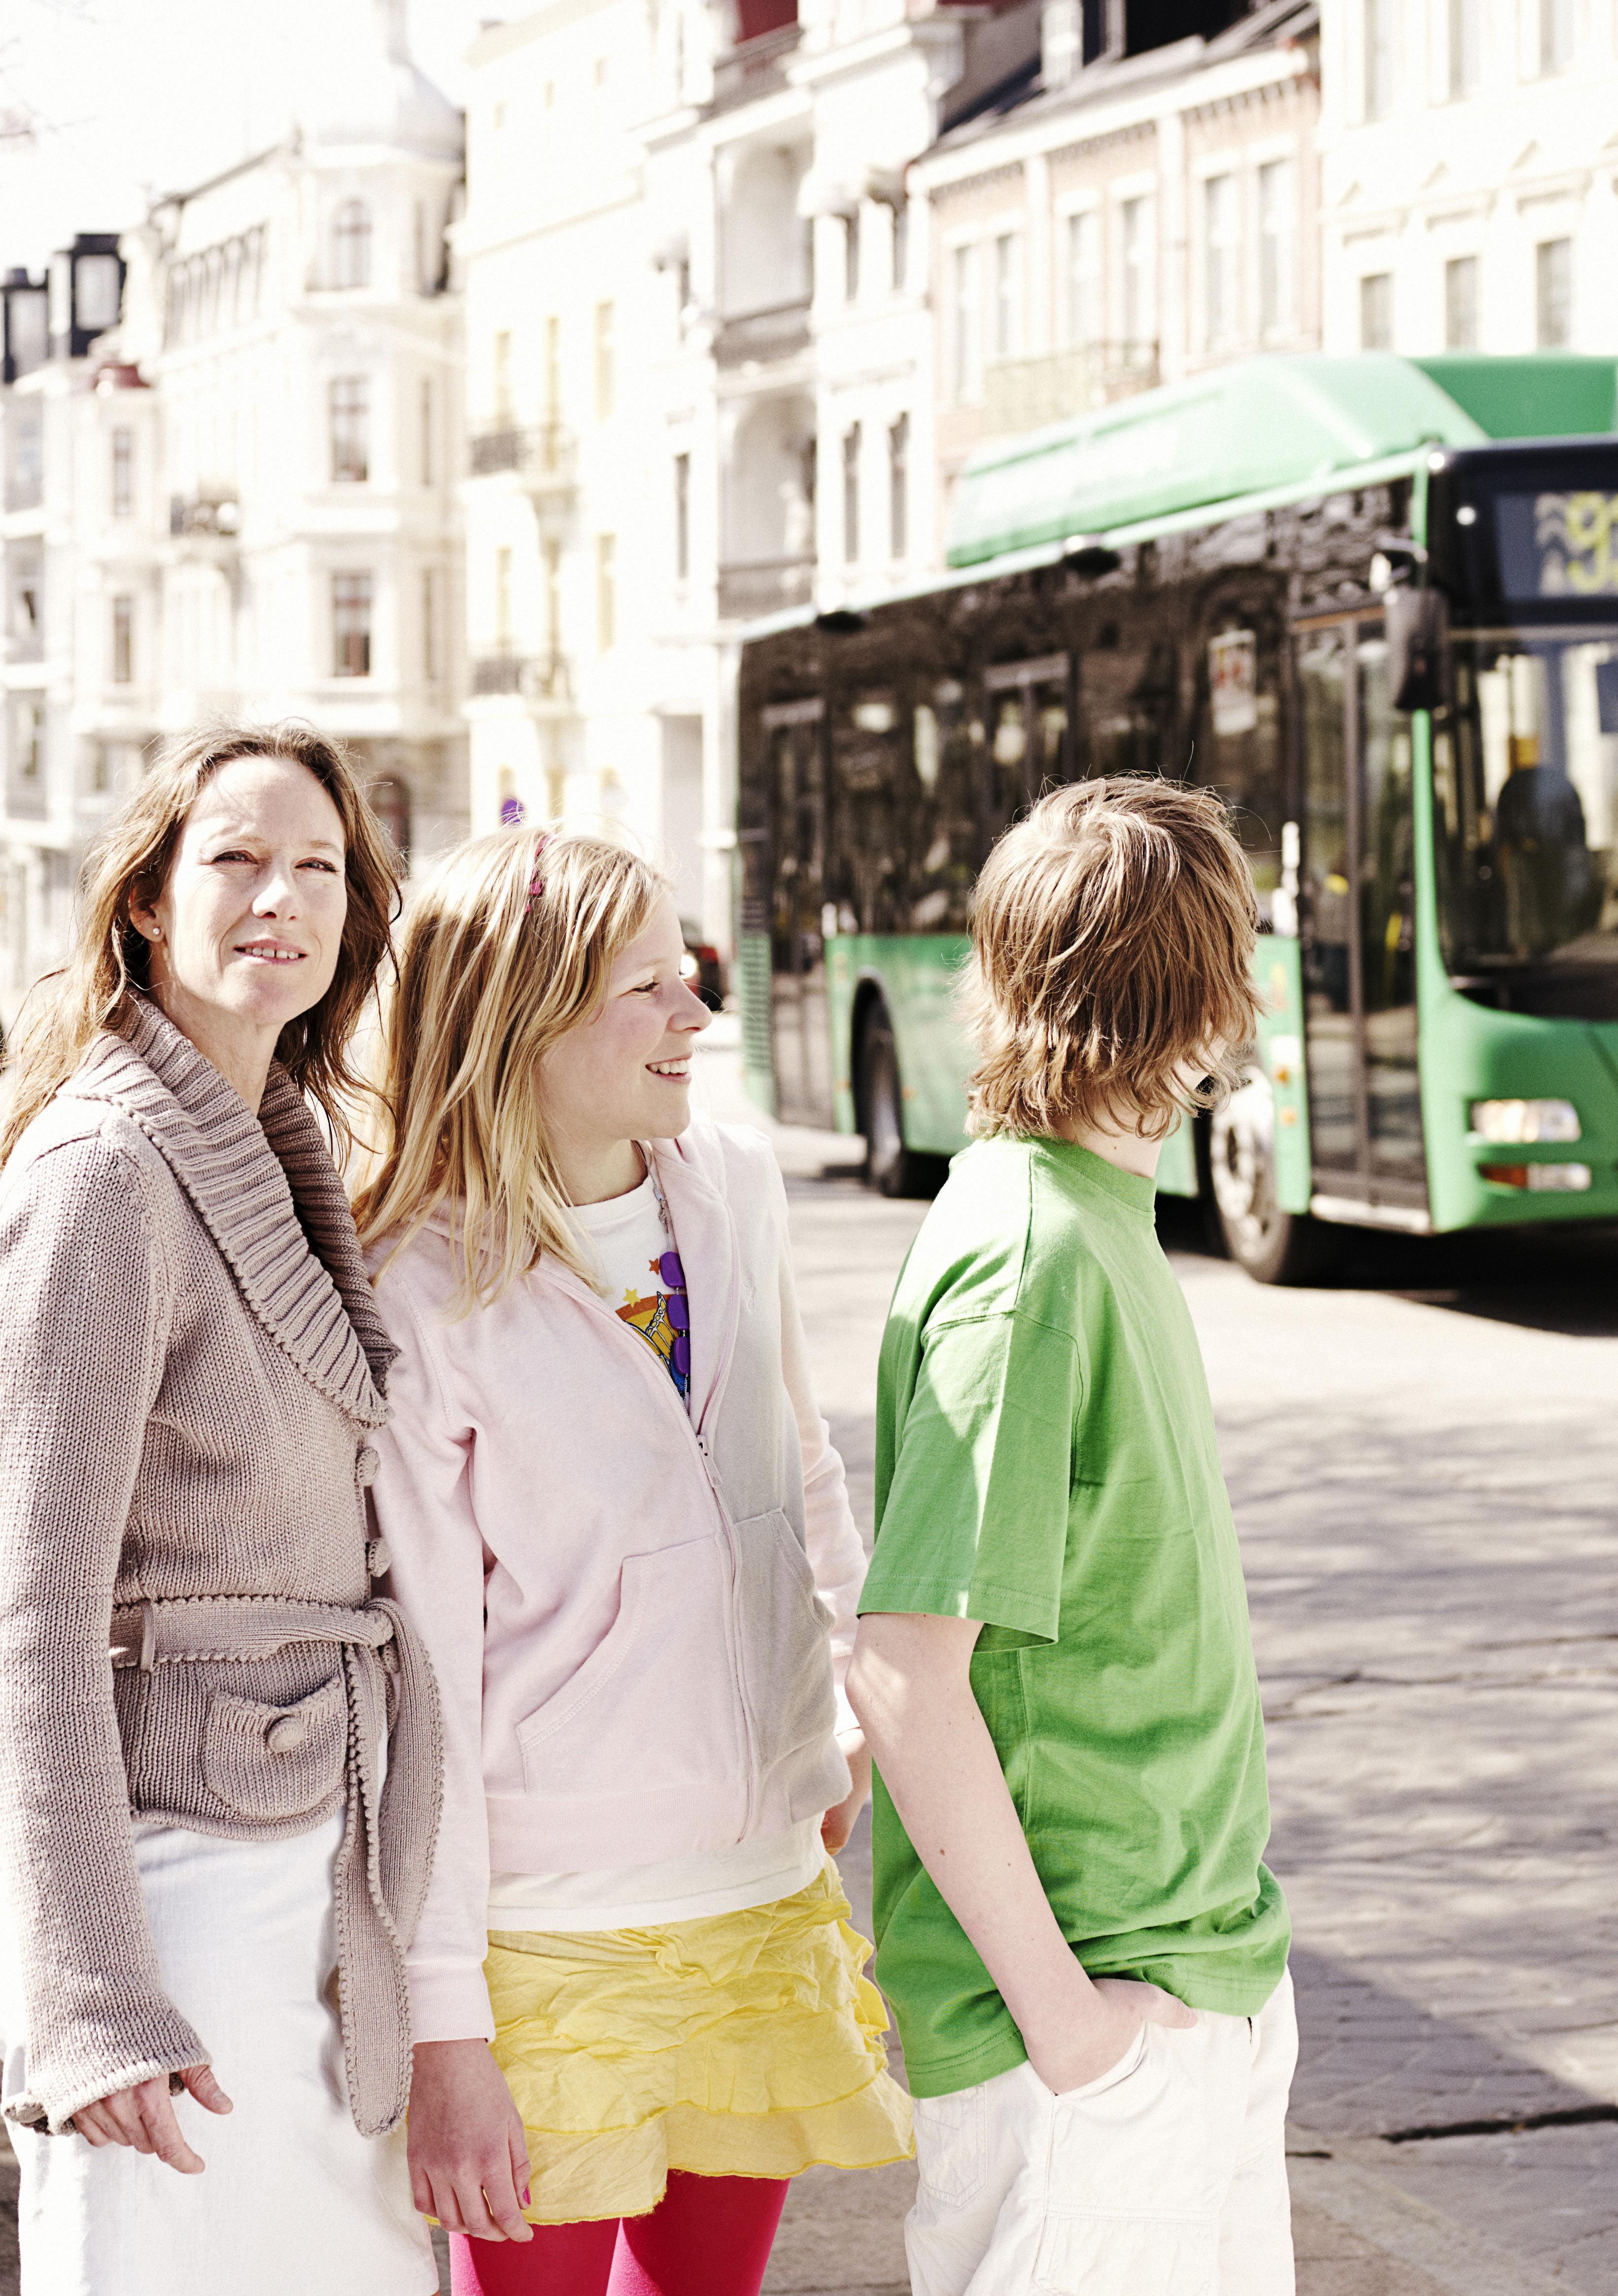 Familjens kollektivtrafik I alla stråk med kollektivtrafik finns potential att öka resandet genom att underlätta för resenärer att välja kollektivtrafik istället för bilen.